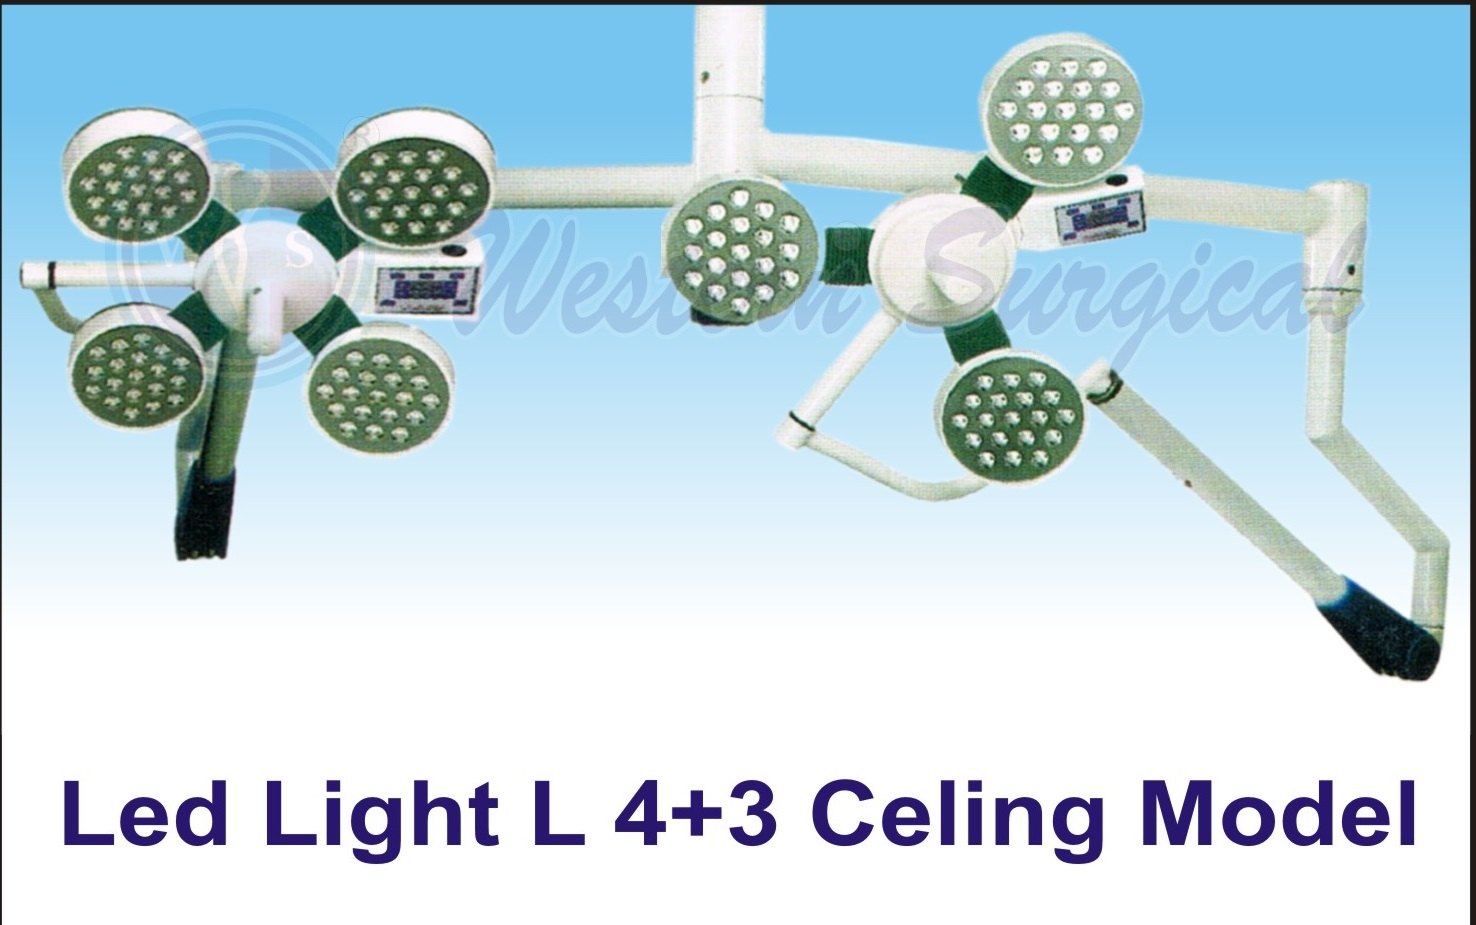 LED Light L 4-3 Ceiling Model 